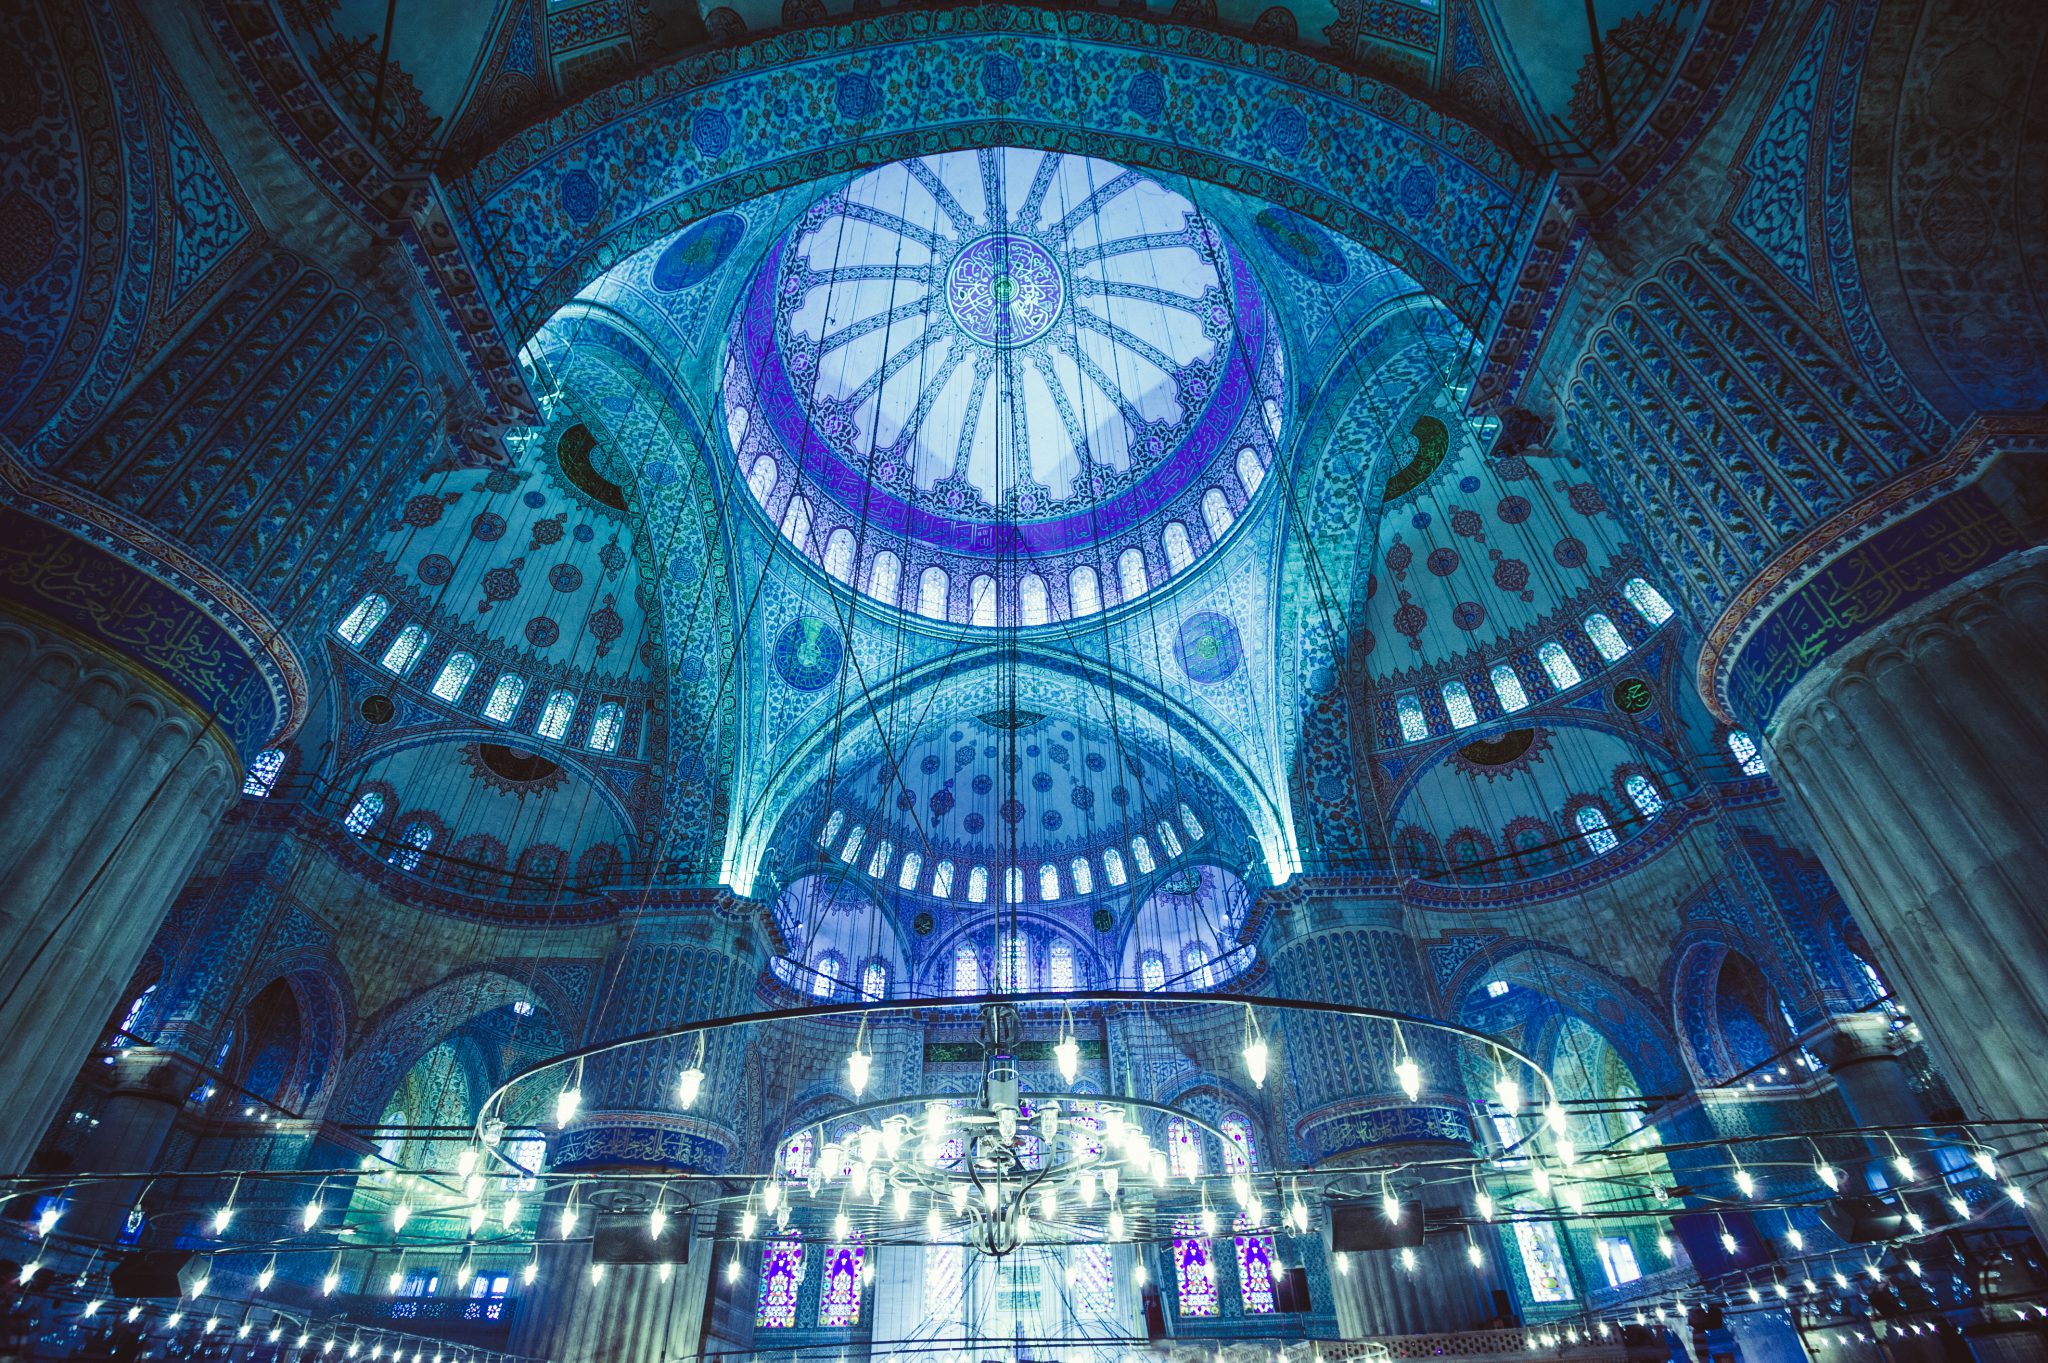 สุเหร่าสีน้ำเงิน (Blue Mosque)